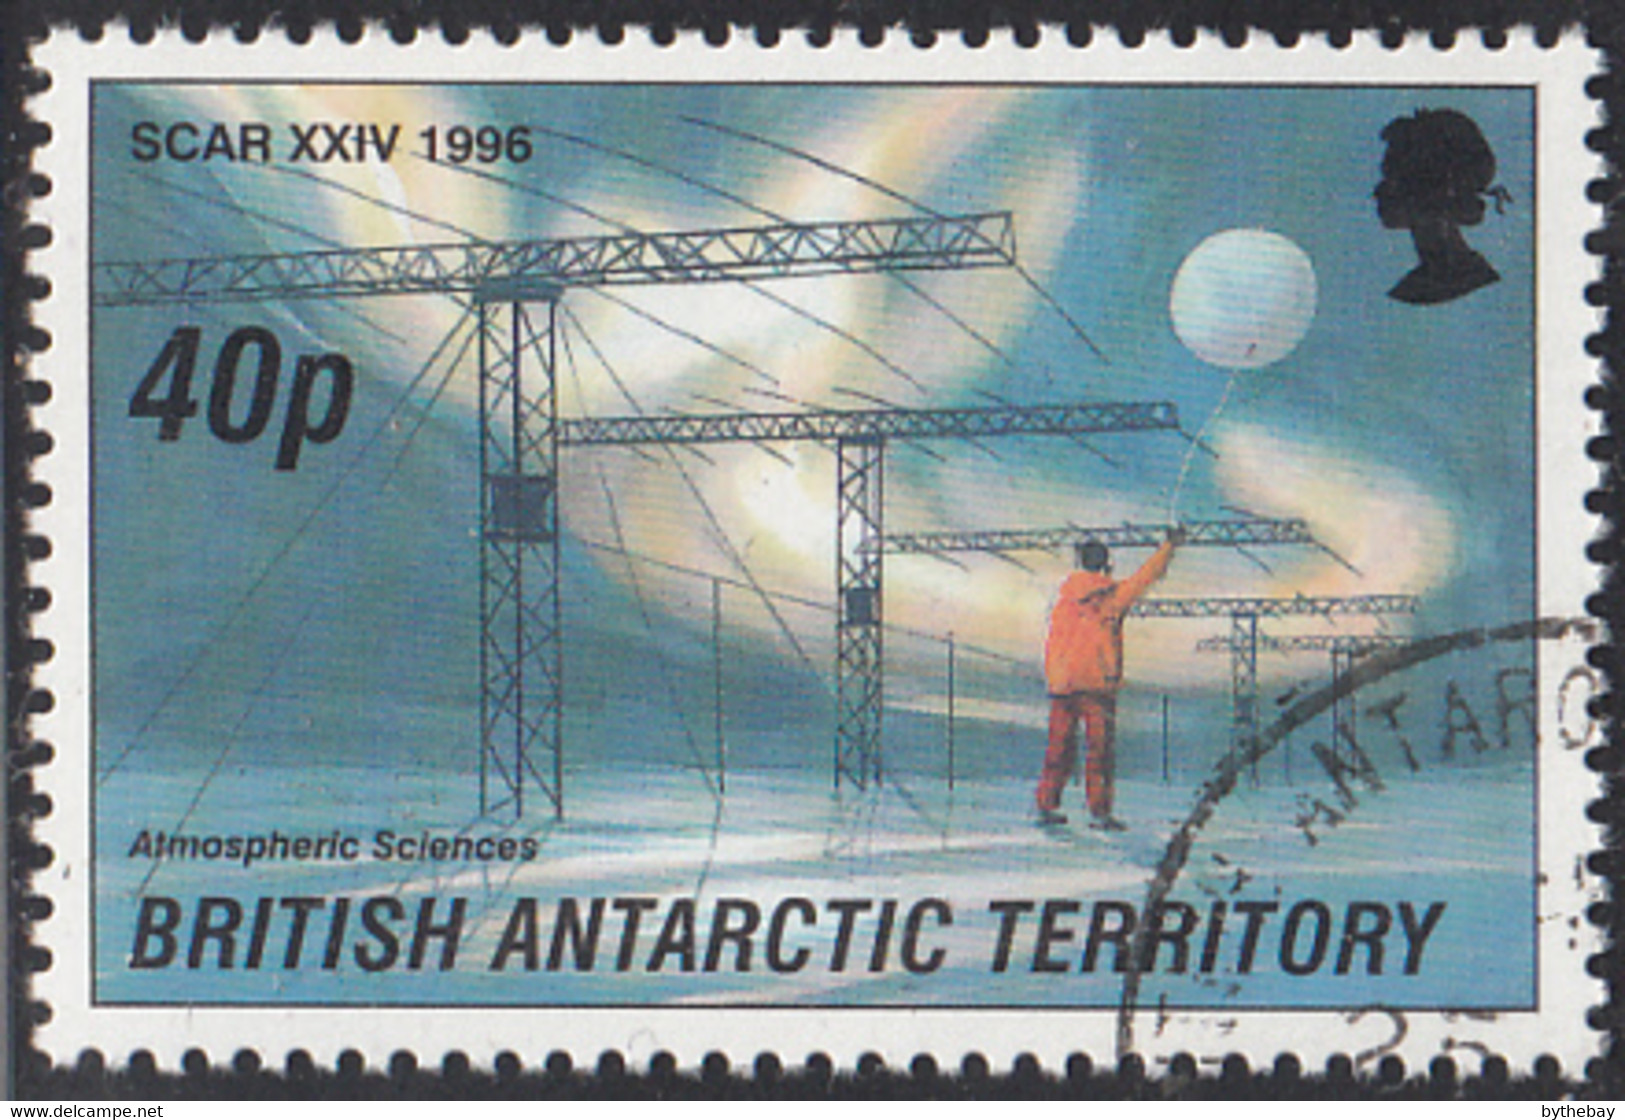 British Antarctic Territory 1996 Used Sc #237 40p Atmospheric Sciences SCAR - Usati